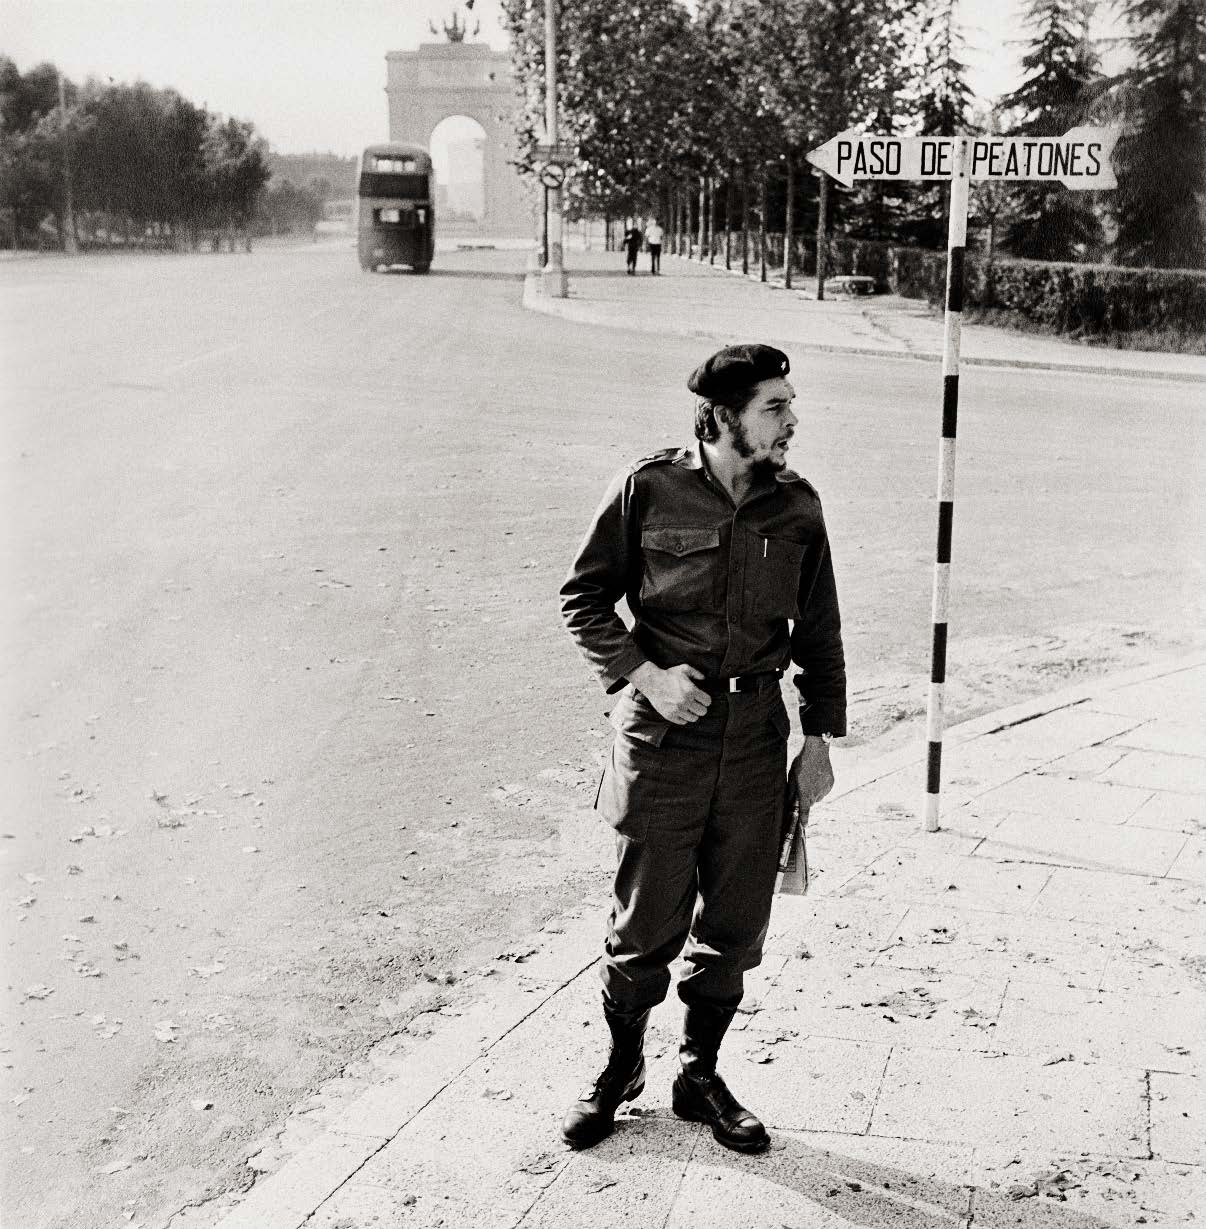 Ο Τσε Γκεβάρα, ως υπουργός στο φρέσκο καθεστώς του Φιντέλ Κάστρο, στην Πανεπιστημιούπολη το 1959: o César Lucas έχει φωτογραφίσει τους πάντες, από τον Μπάστερ Κίτον μέχρι τον Σον Κόνερι και από την Μπριζίτ Μπαρντό μέχρι τον Τζον Λένον, ωστόσο αυτή φωτογραφία του Τσε - η οποία έγινε γνωστή μετά από έκθεση τη δεκαετία του 1980- παραμένει από τα πιο διάσημα έργα του